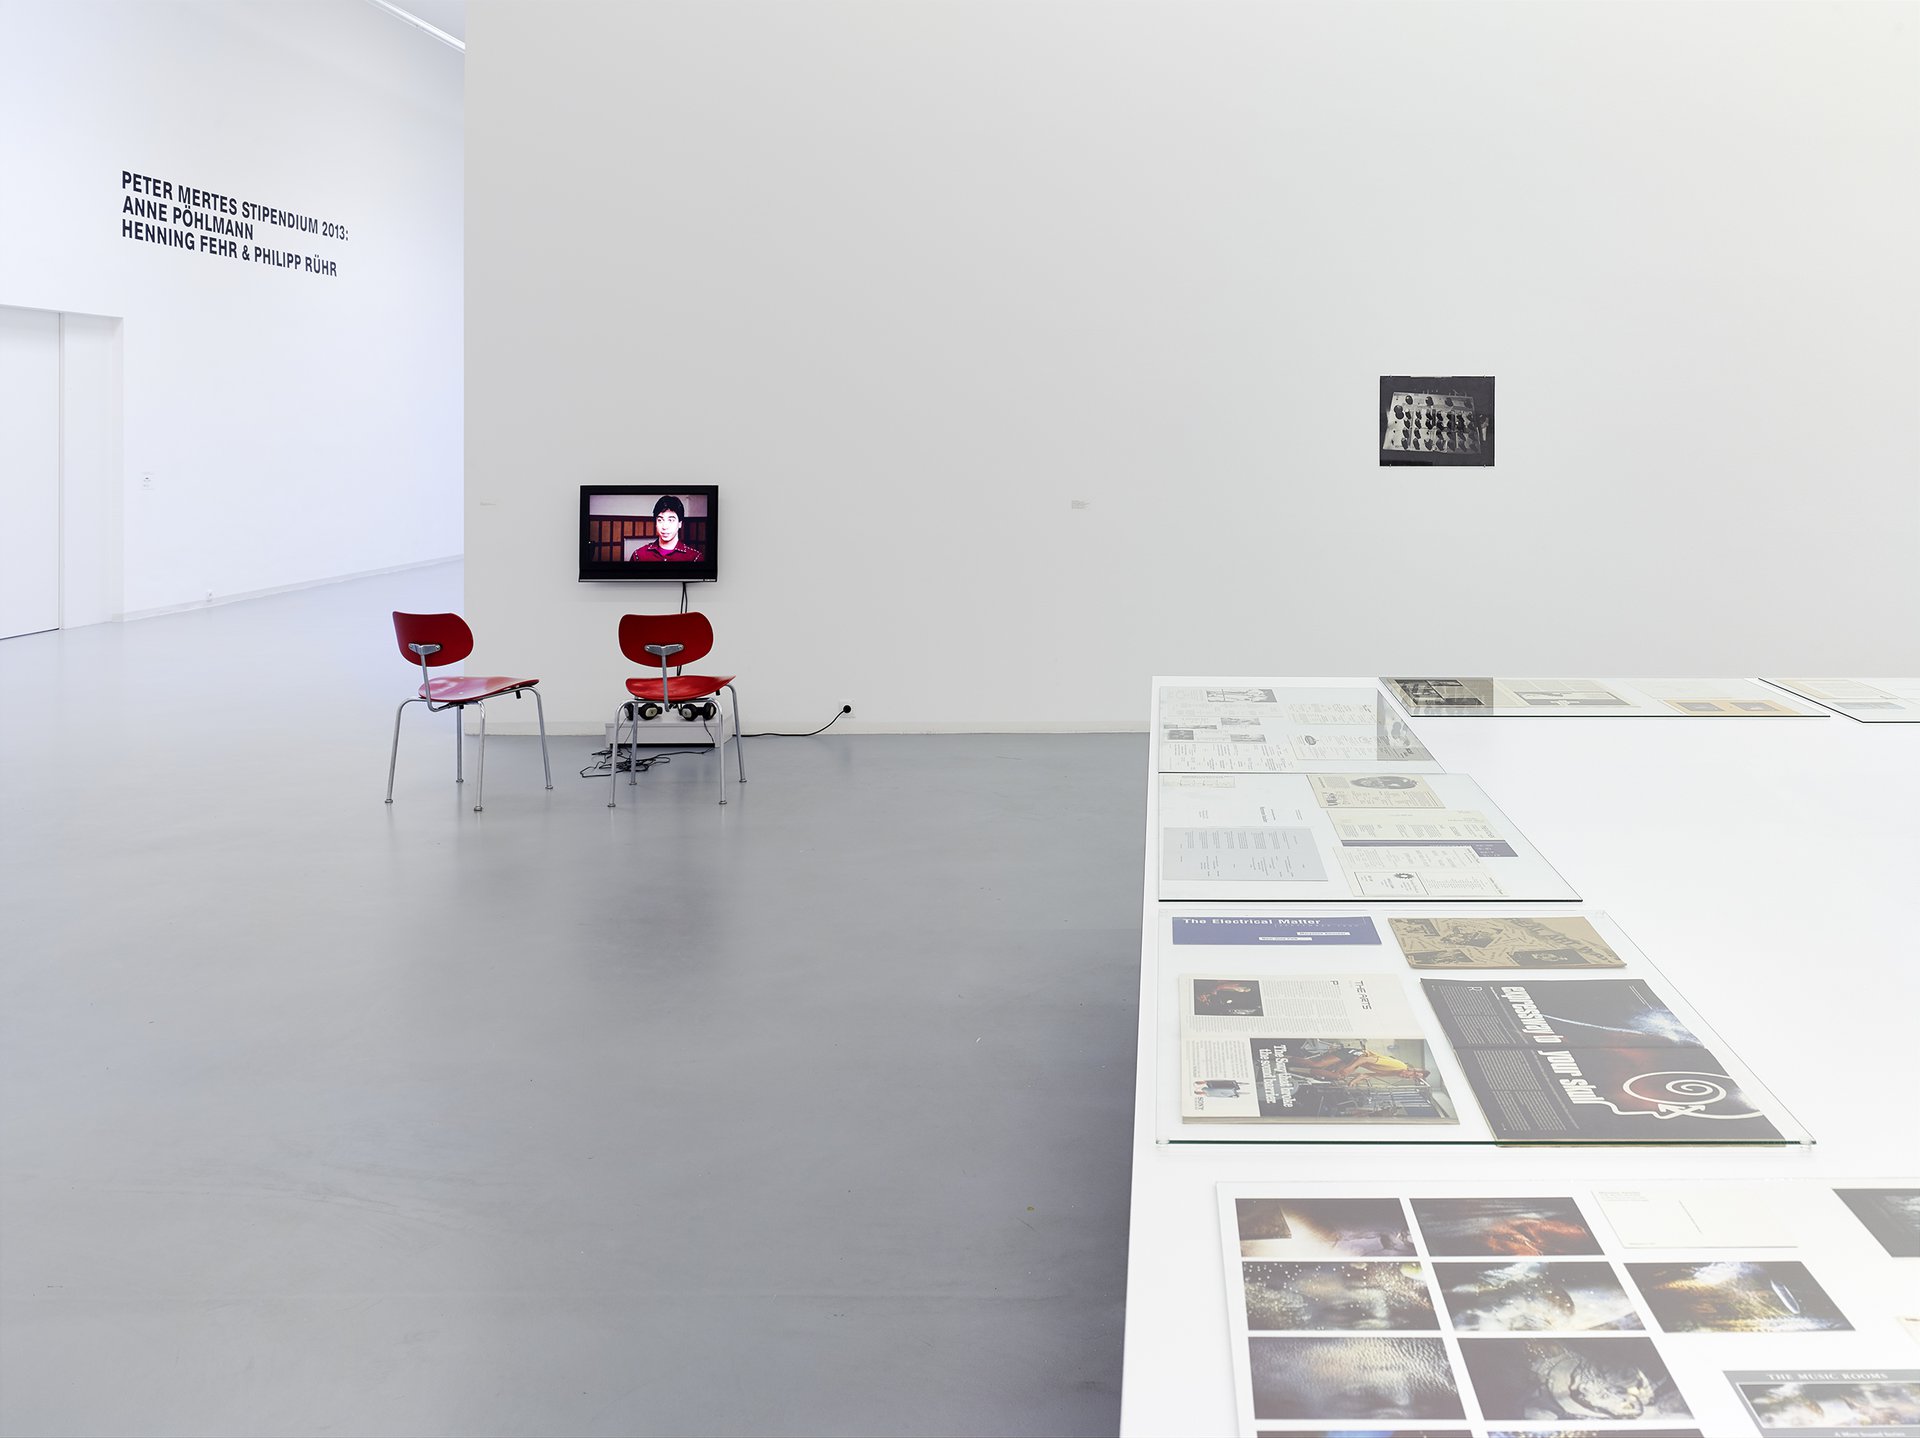 Maryanne Amacher, Installationsansicht, 2014, Bonner Kunstverein, Courtesy die Künstlerin. Photo: Simon Vogel